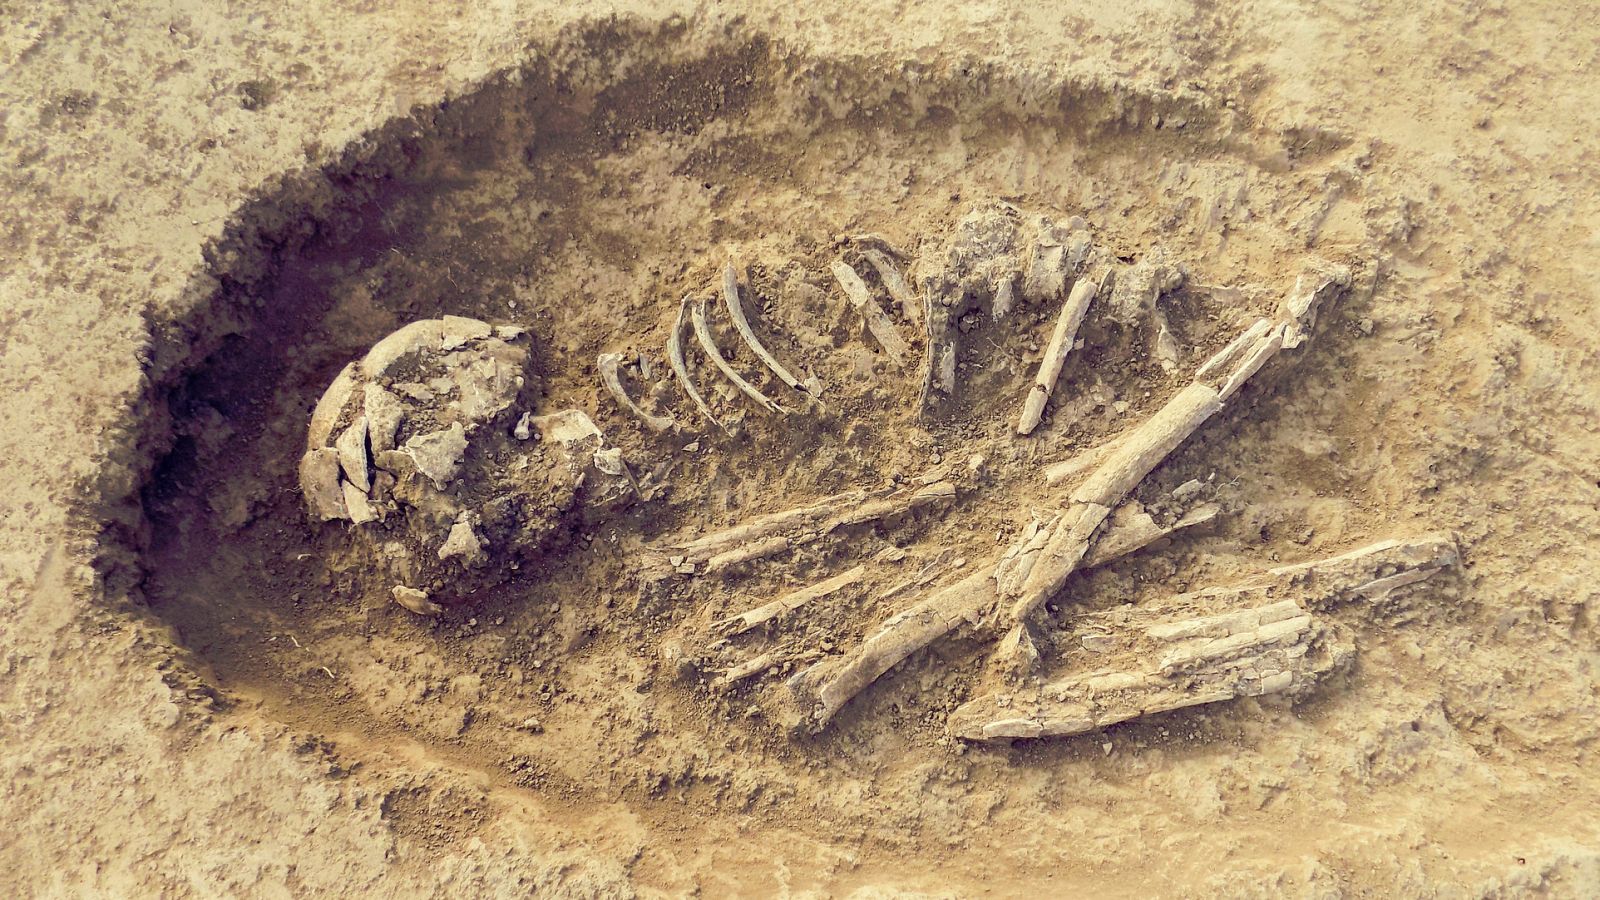 Normalmente, cuando se recuperan fósiles humanos aislados en los yacimientos es muy difícil asignarles el sexo.